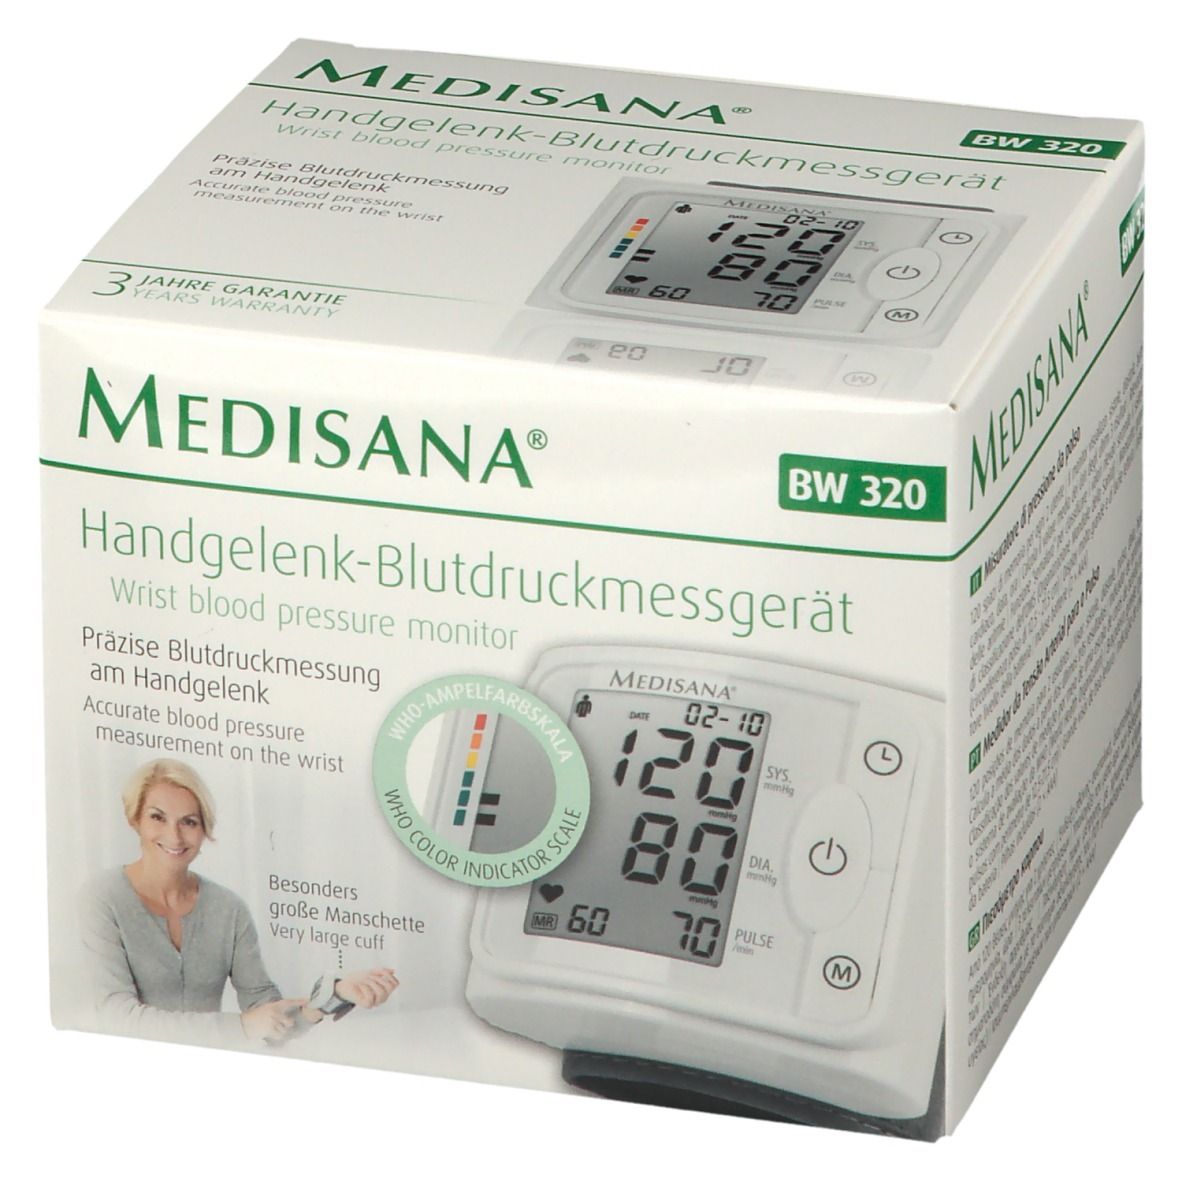 Handgelenk-Blutdruckmessgerät St Medisana - 1 BW Apotheke Redcare 320